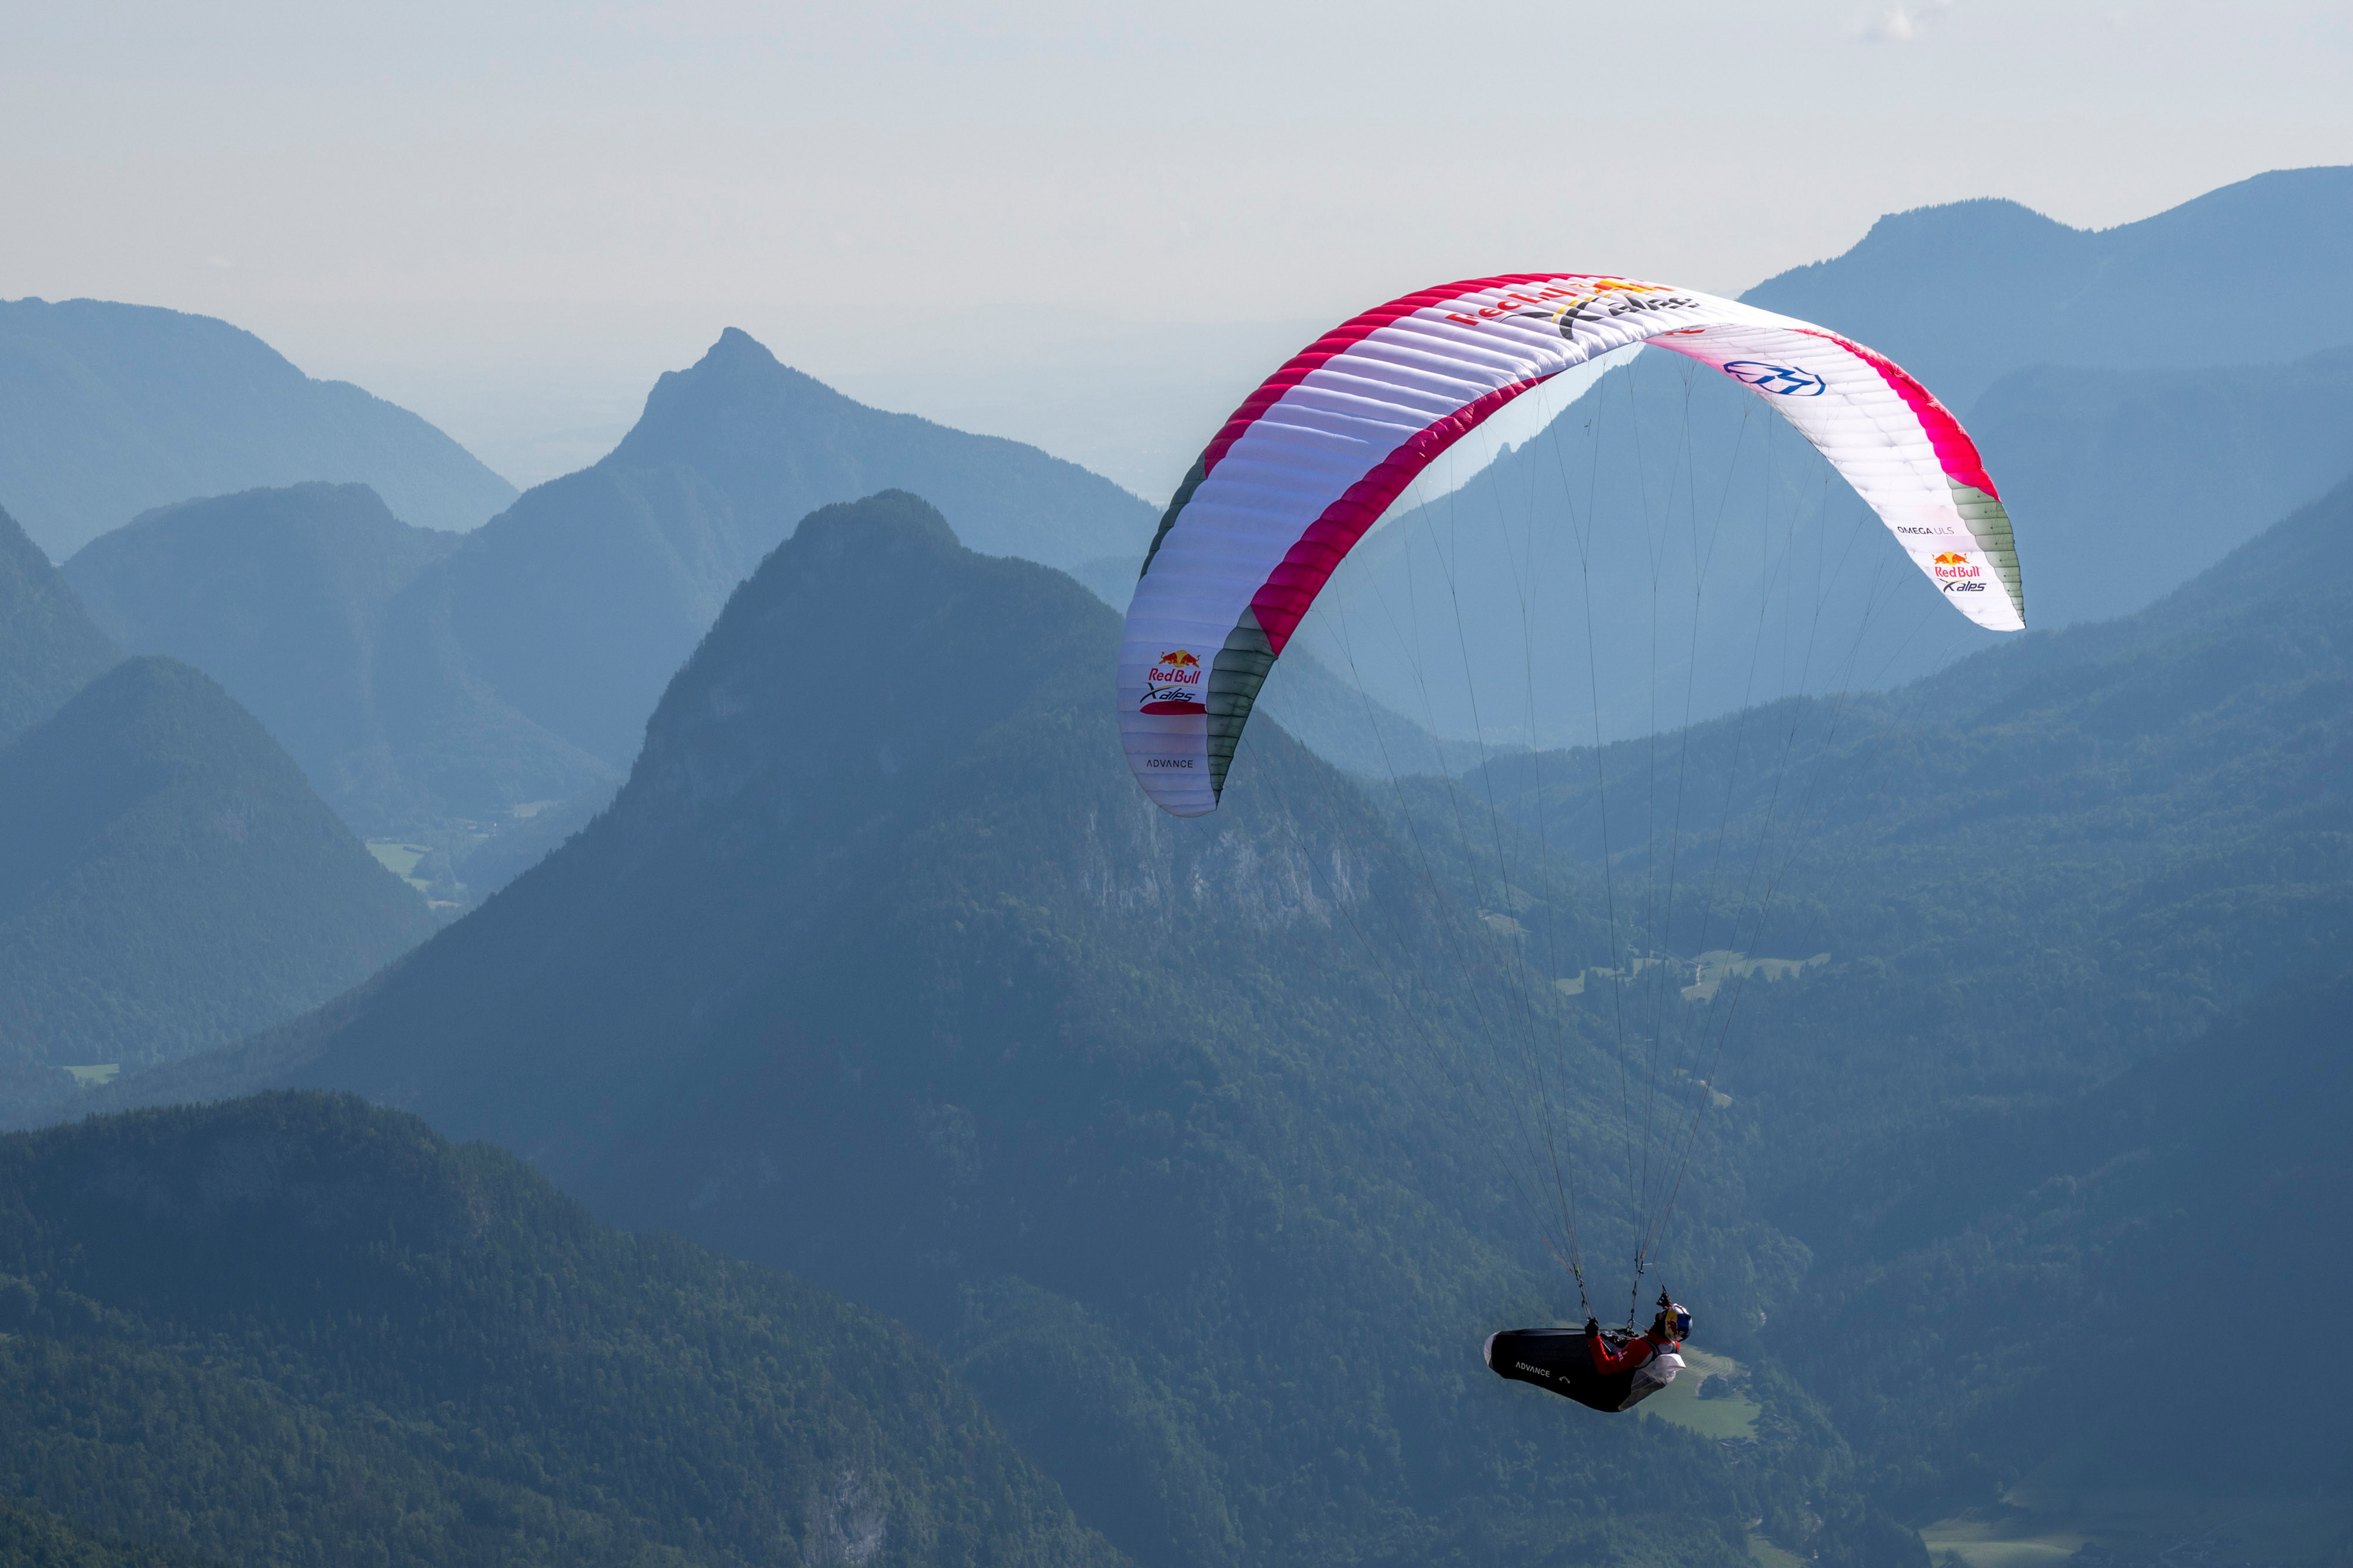 Thomas De Dorlodot flys during Red Bull X-Alps in Austria on June 12, 2023.